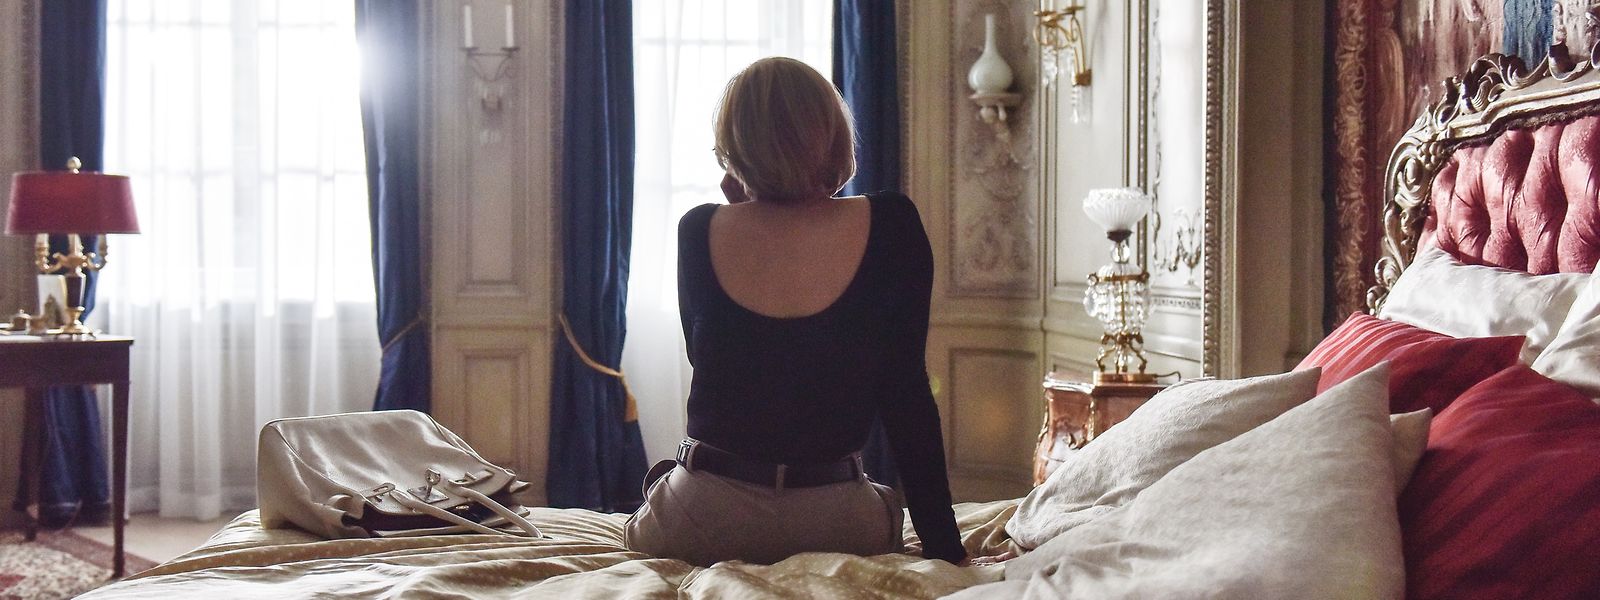 Diana (Mareile Blendl) telefoniert im Pariser Hotel Ritz mit ihrem Freund, dem Journalisten Richard Kay. Sie macht sich Sorgen wegen der Kritik aus konservativen Kreisen an ihrer Anti-Landminen-Kampagne.